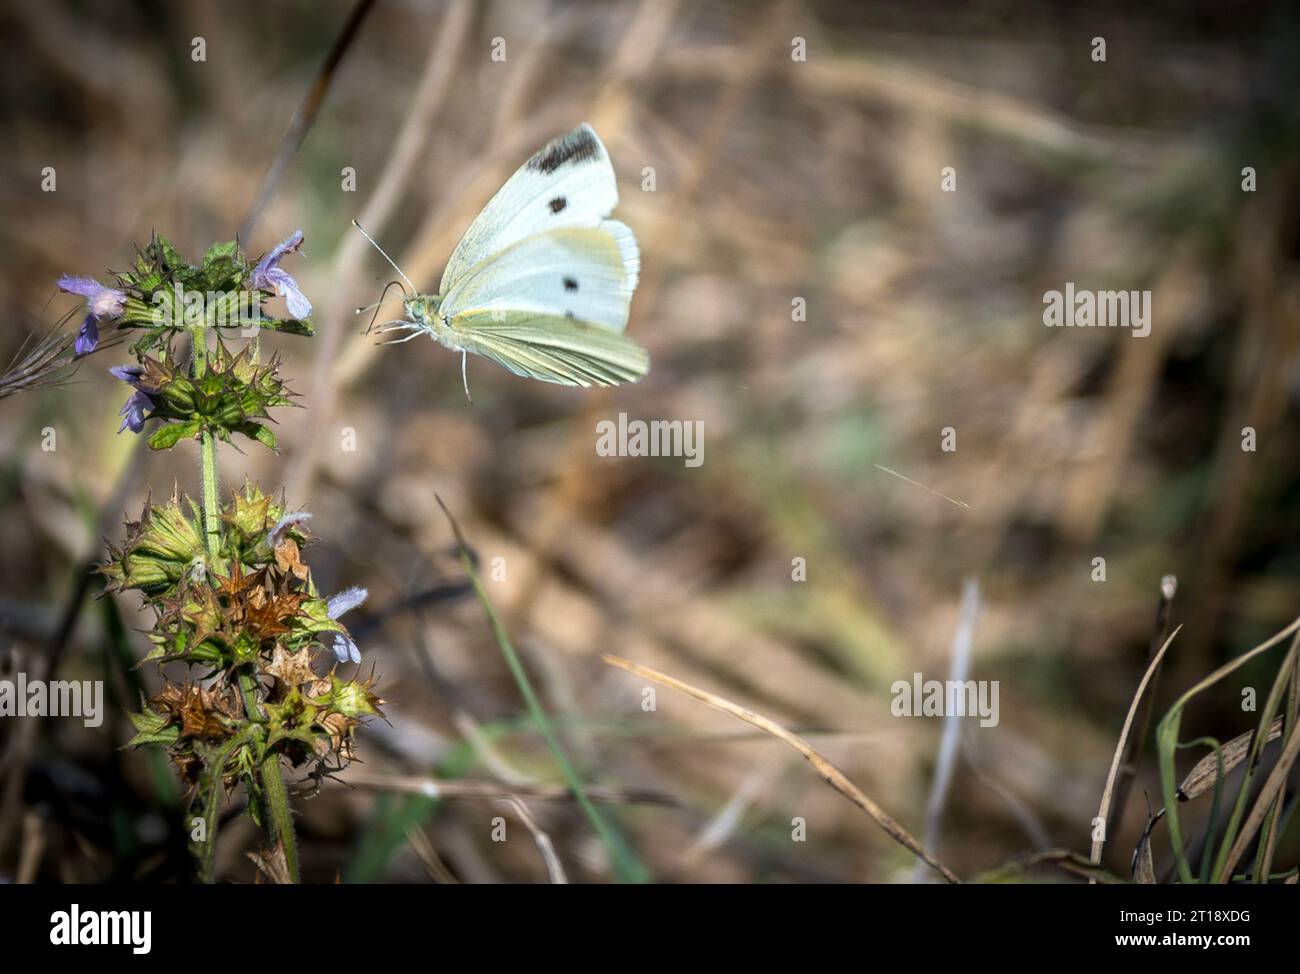 Malomirovo Bulgarie 12 octobre 2023 : ciel bleu brise légère mère nature en pleine floraison d'automne Butterflys et colibri hawkmorth Clifford Norton Alamy en direct nouvelles Banque D'Images